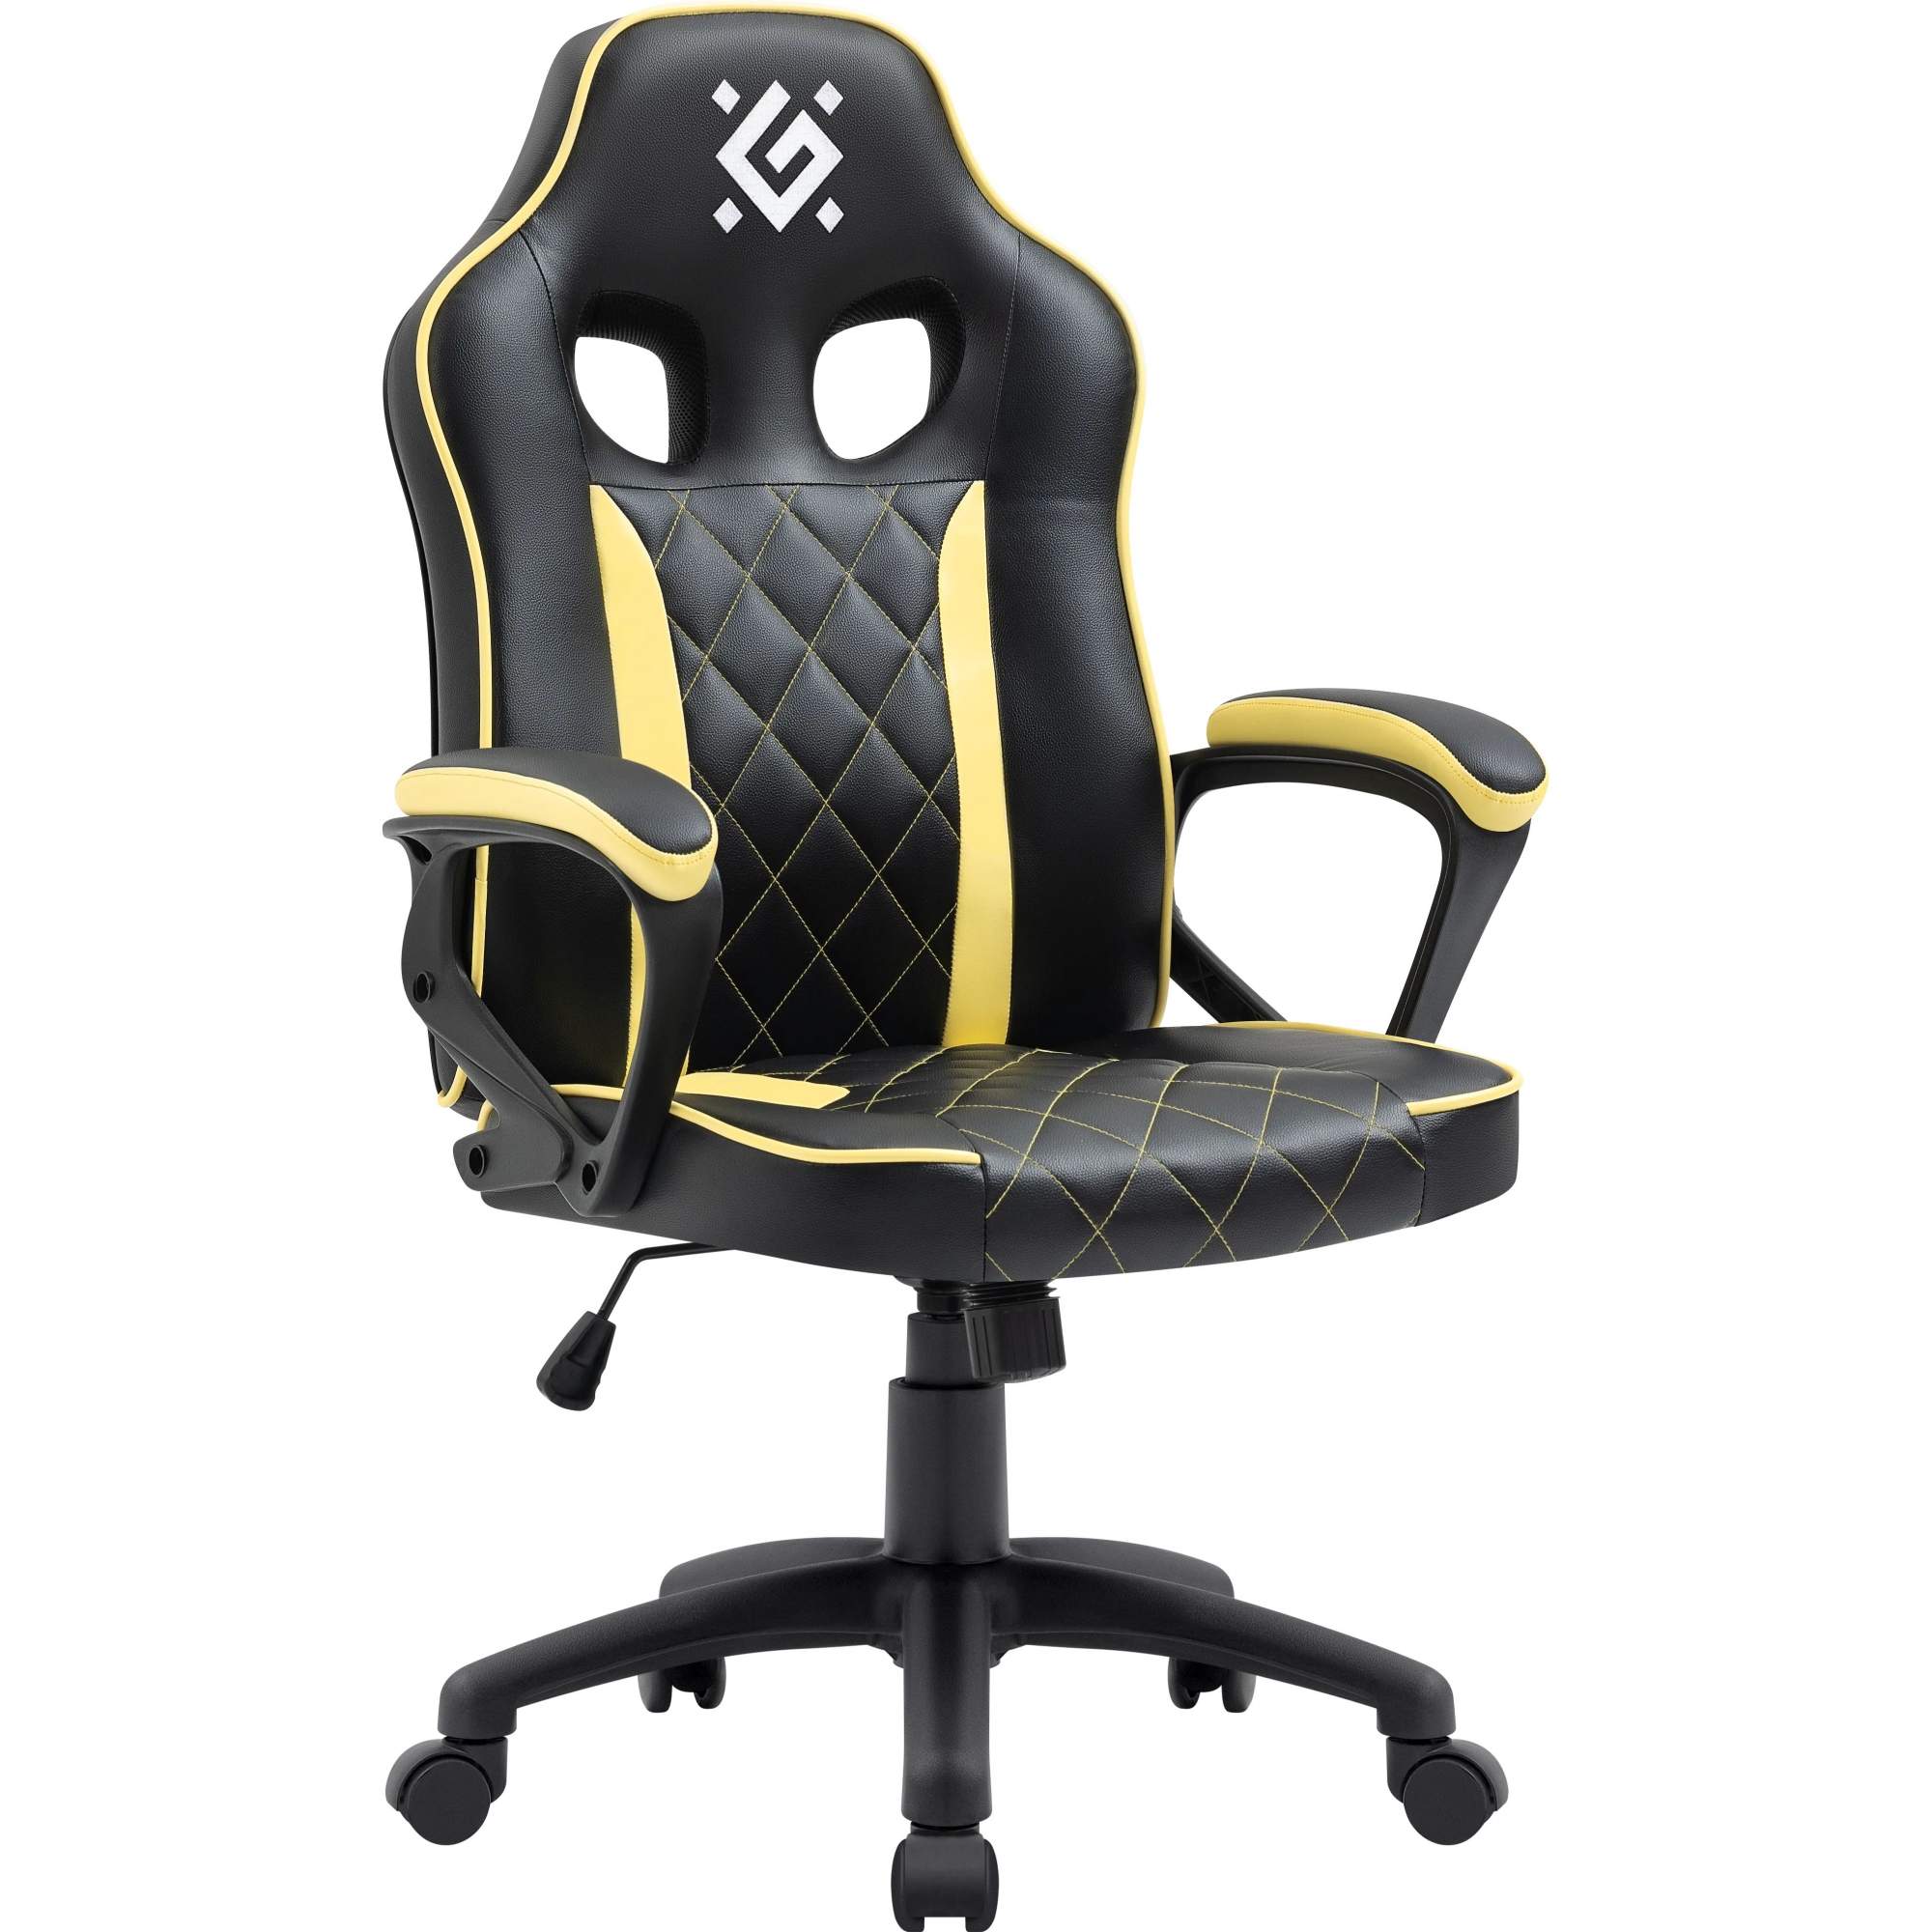 Кресло игровое Defender Helios полиуретан, ролики 50 мм, черно-желтое - купить в Мегамаркет Екб, цена на Мегамаркет